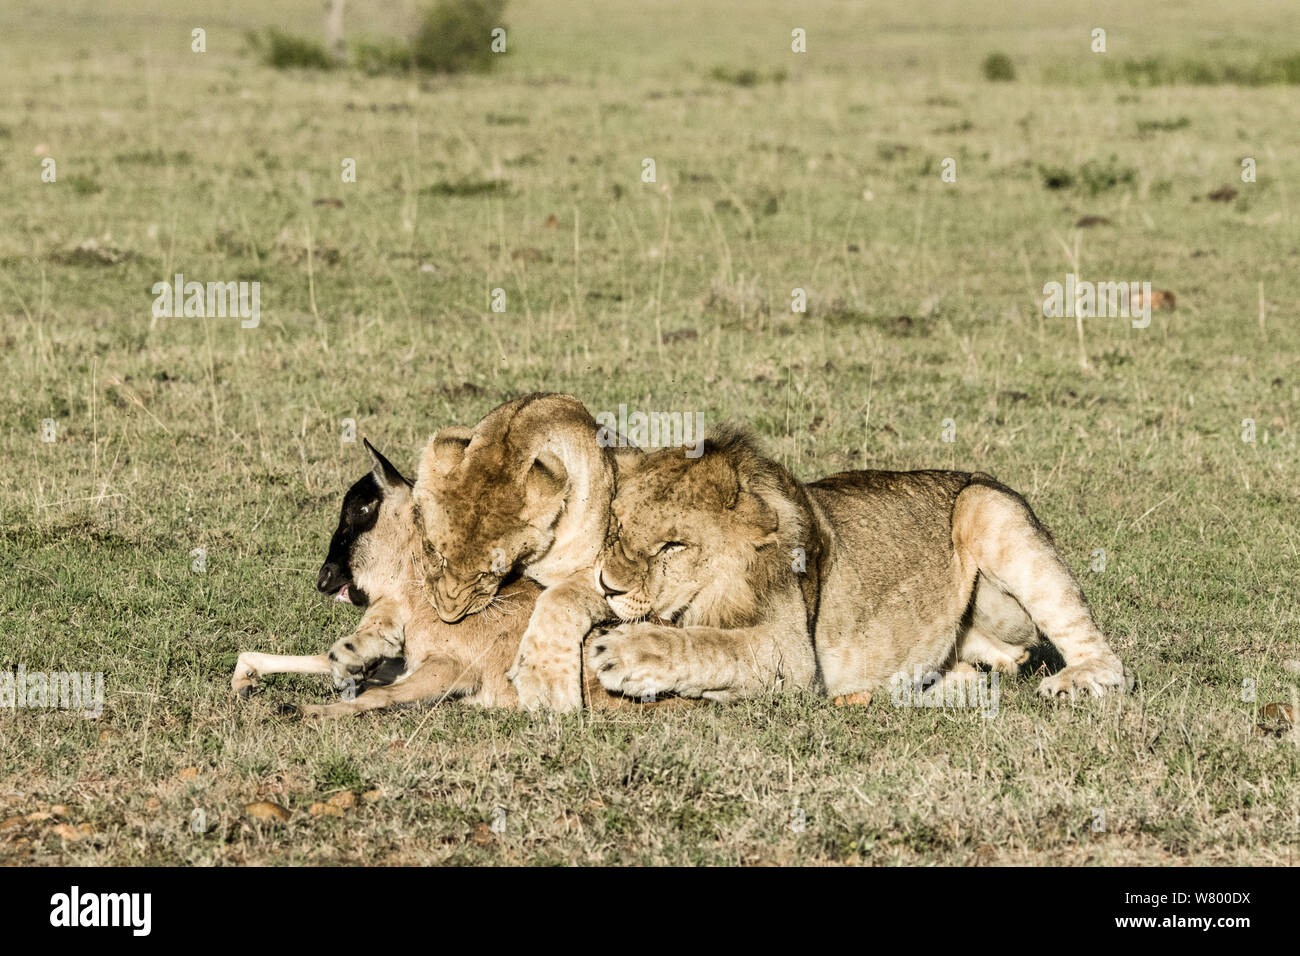 León (Panthera leo) matando bebes perdidos (Ñus Connochaetes taurinus) con un macho después de jugar con él durante un largo tiempo, Masai-Mara Game Reserve, Kenya Foto de stock